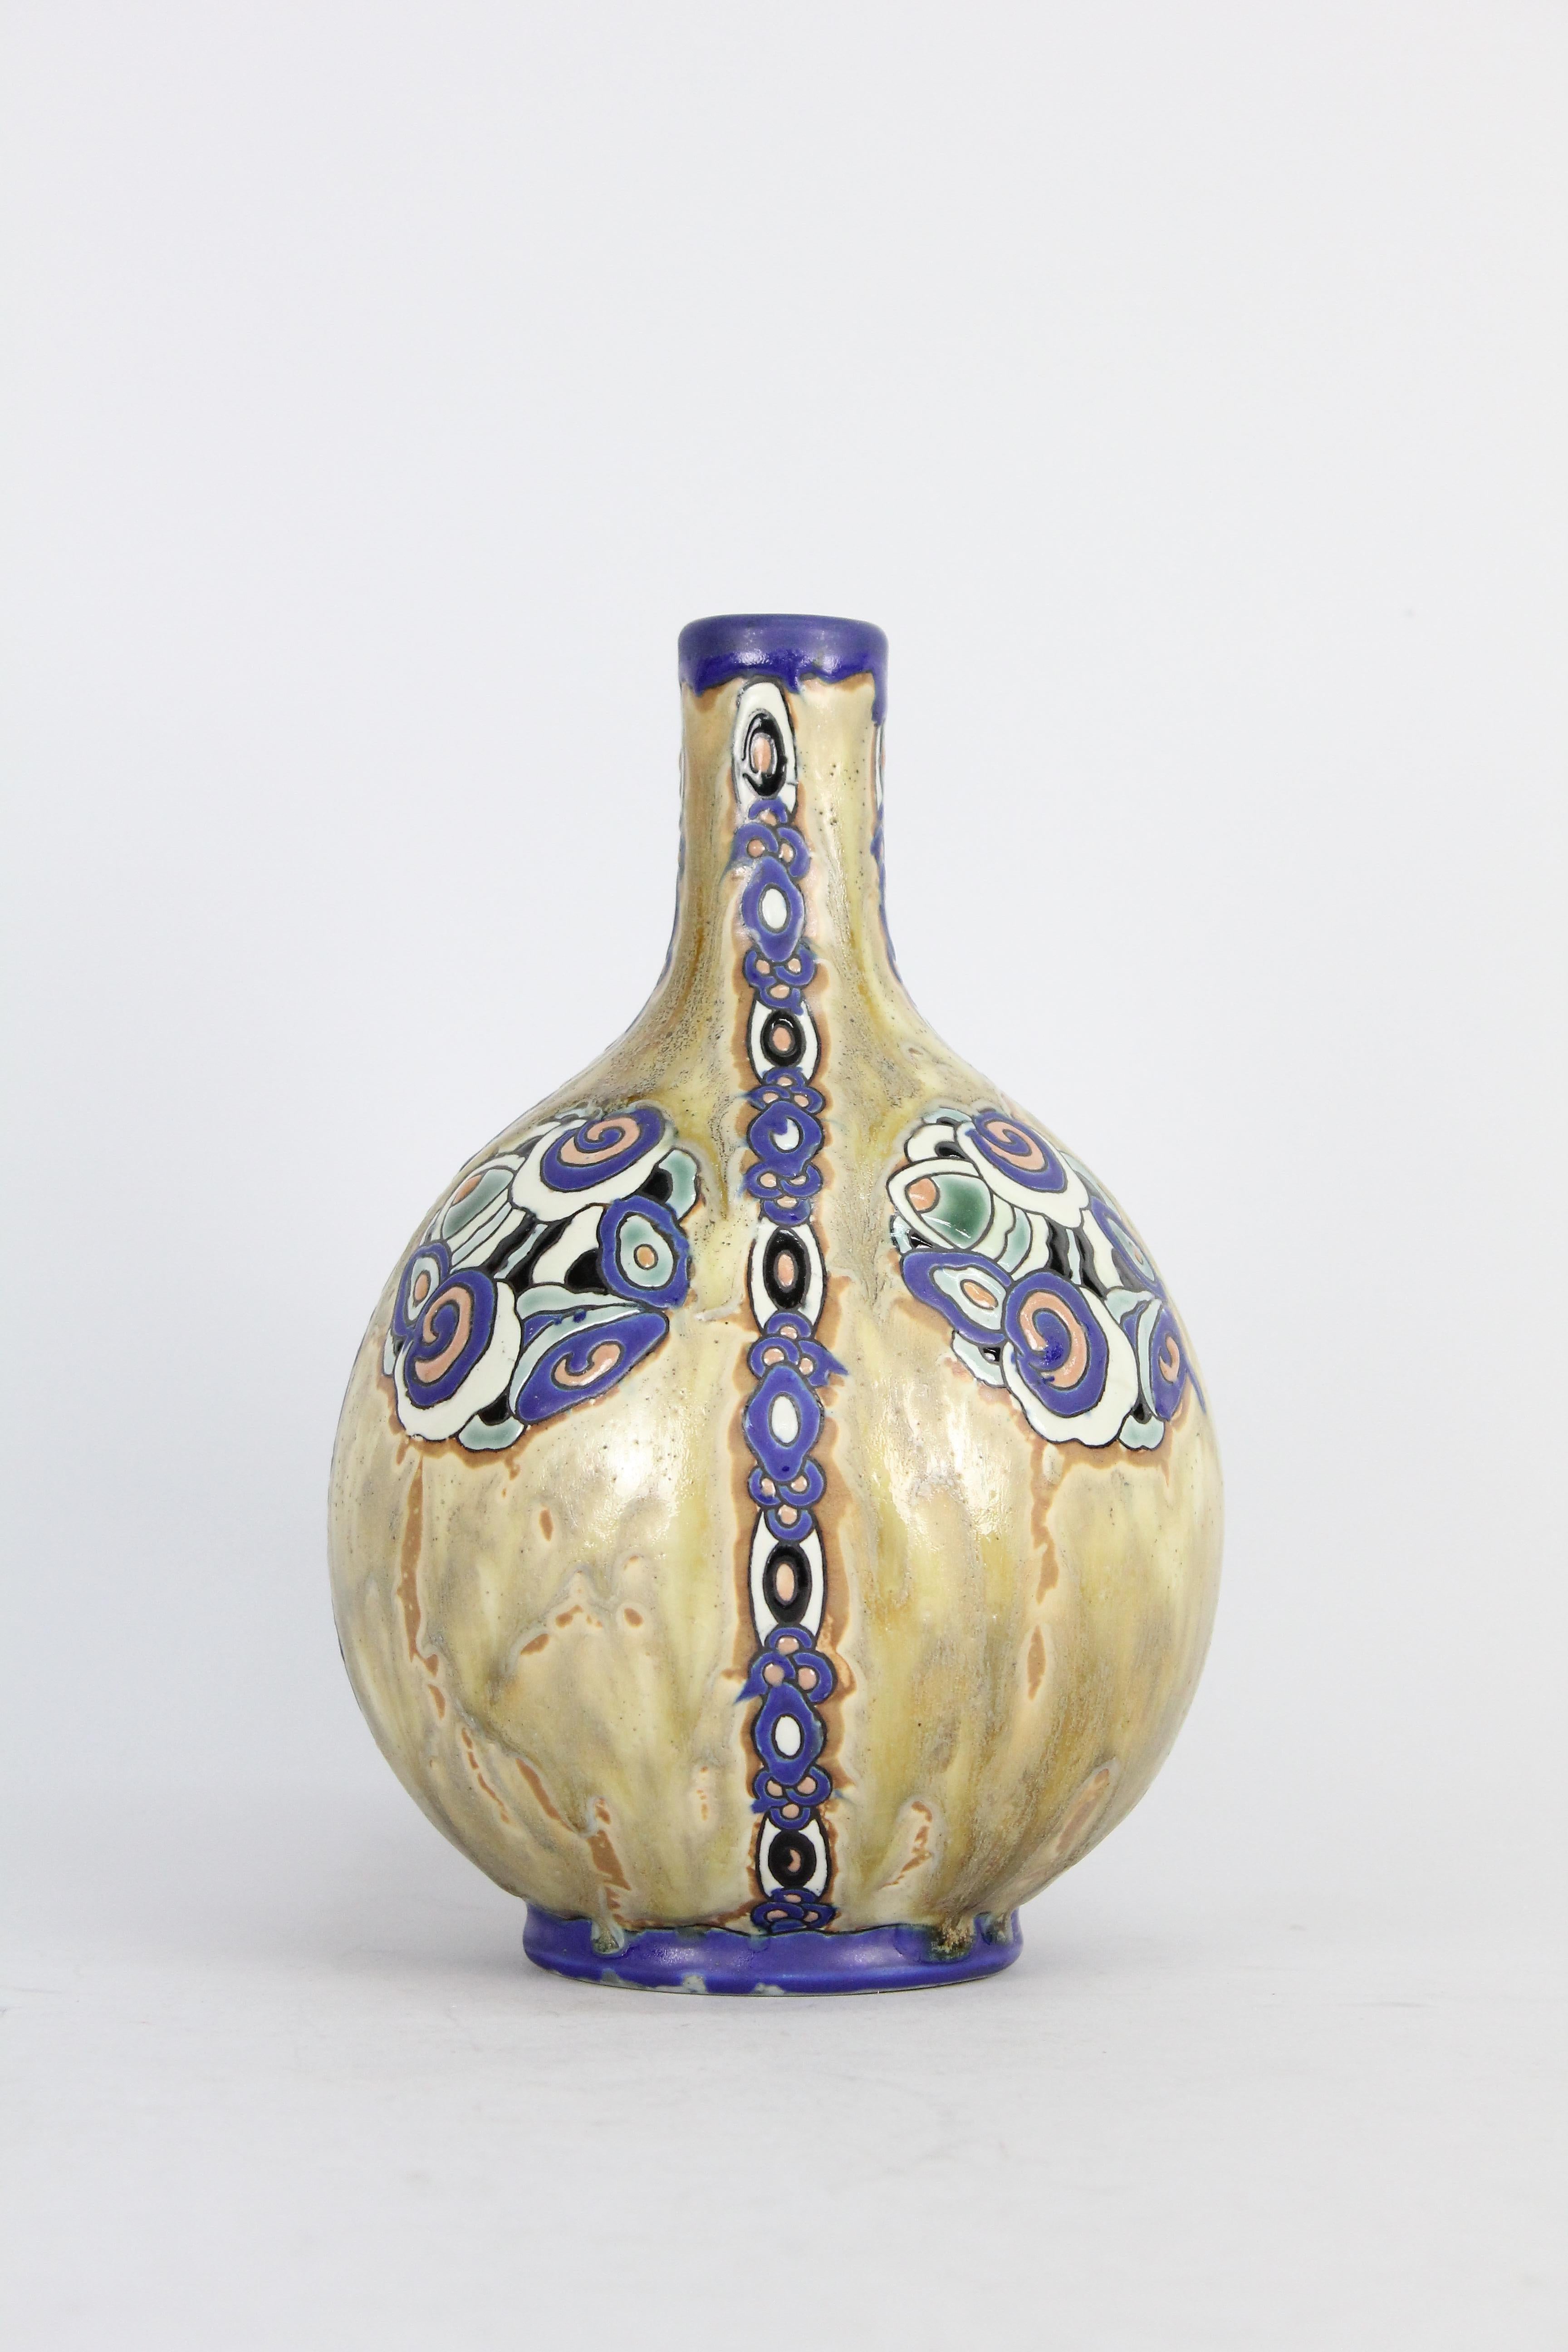 Eine sehr schöne und typische Art Déco Keramikvase von Charles Catteau für Boch Fréres.

Signiert 